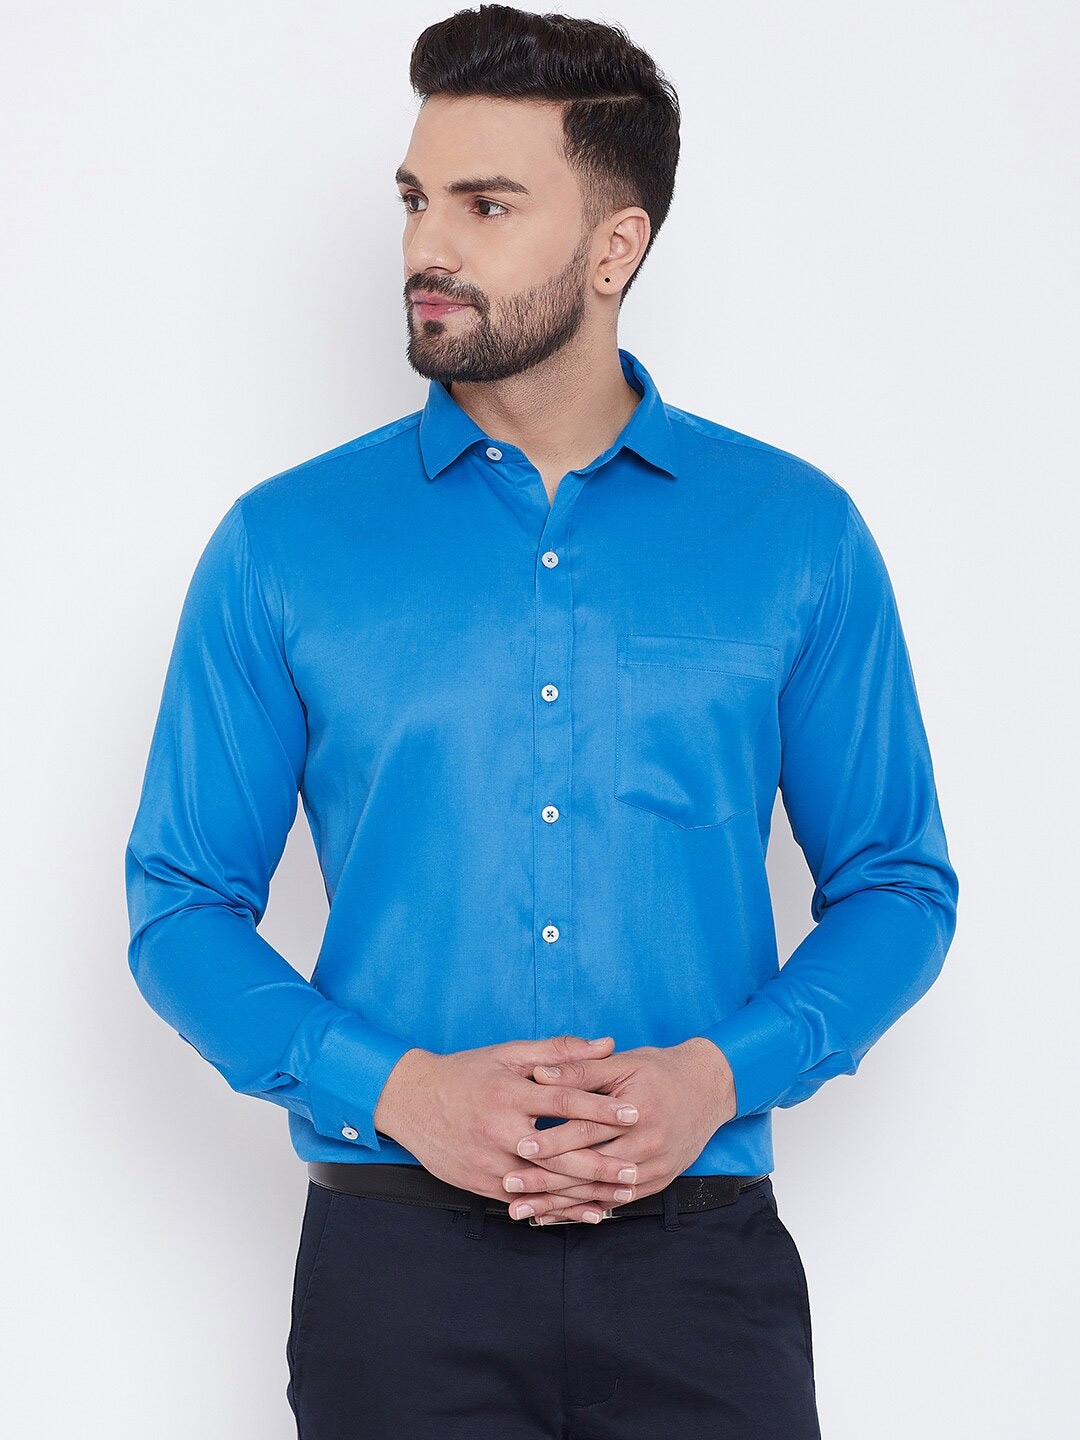 Buy D Kumar Men Blue Standard Satin Party Shirt - Shirts for Men ...